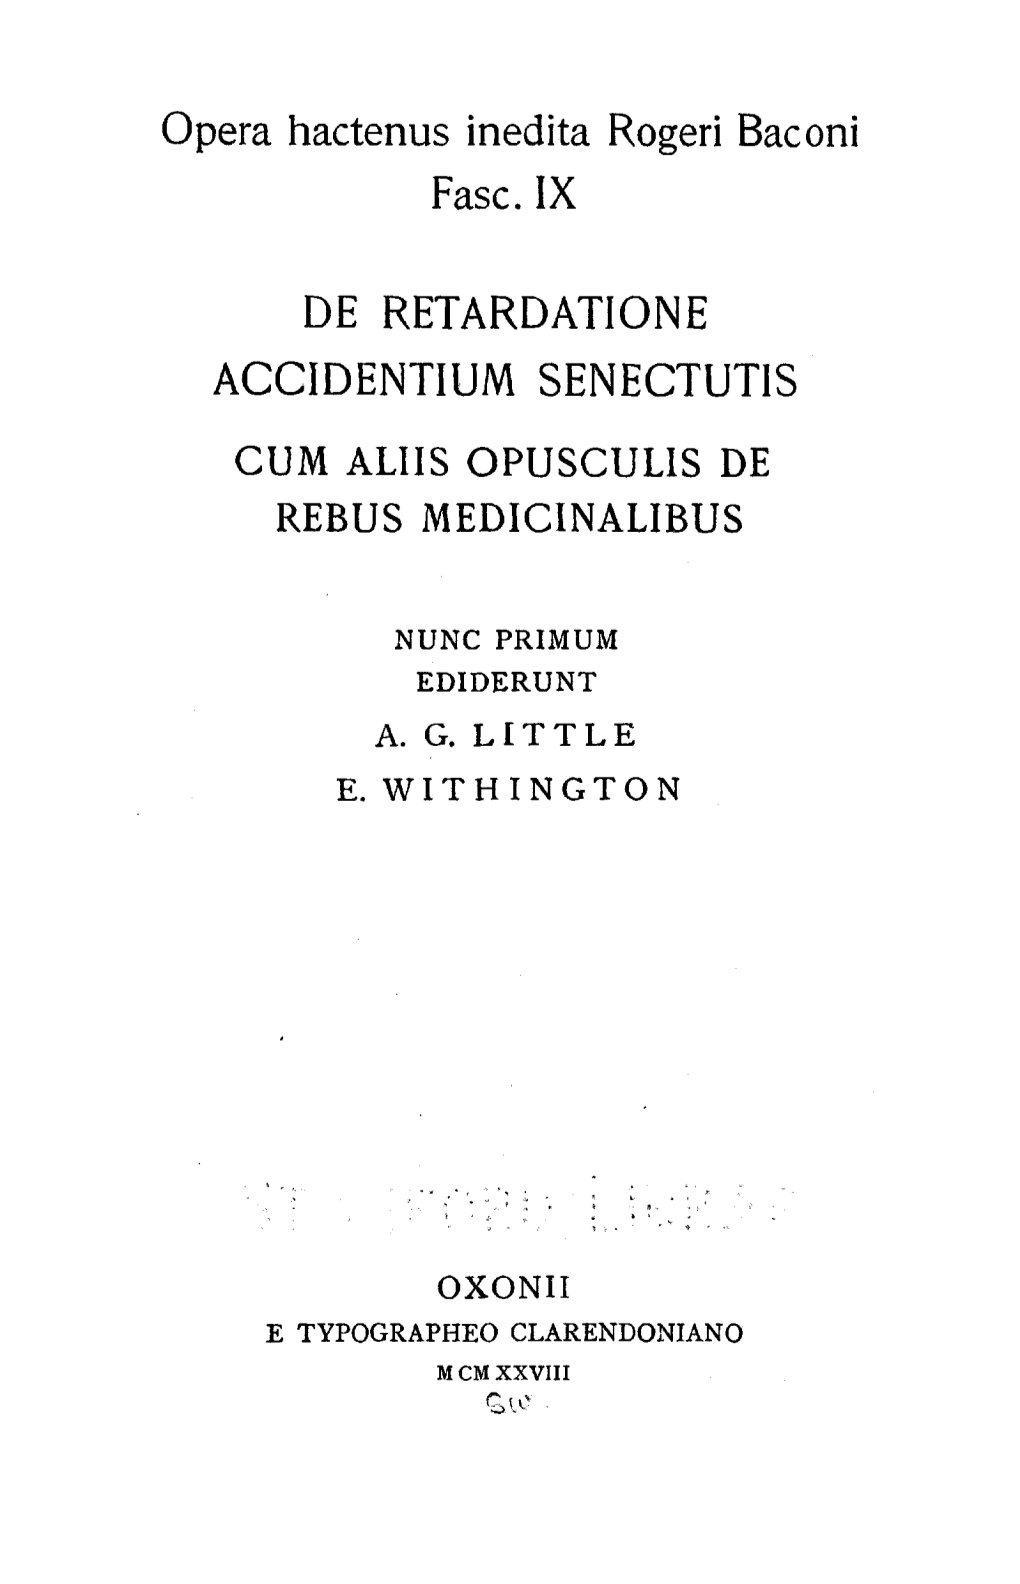 De Retardatione Accidentium Senectutis Cum Aliis Opusculis De